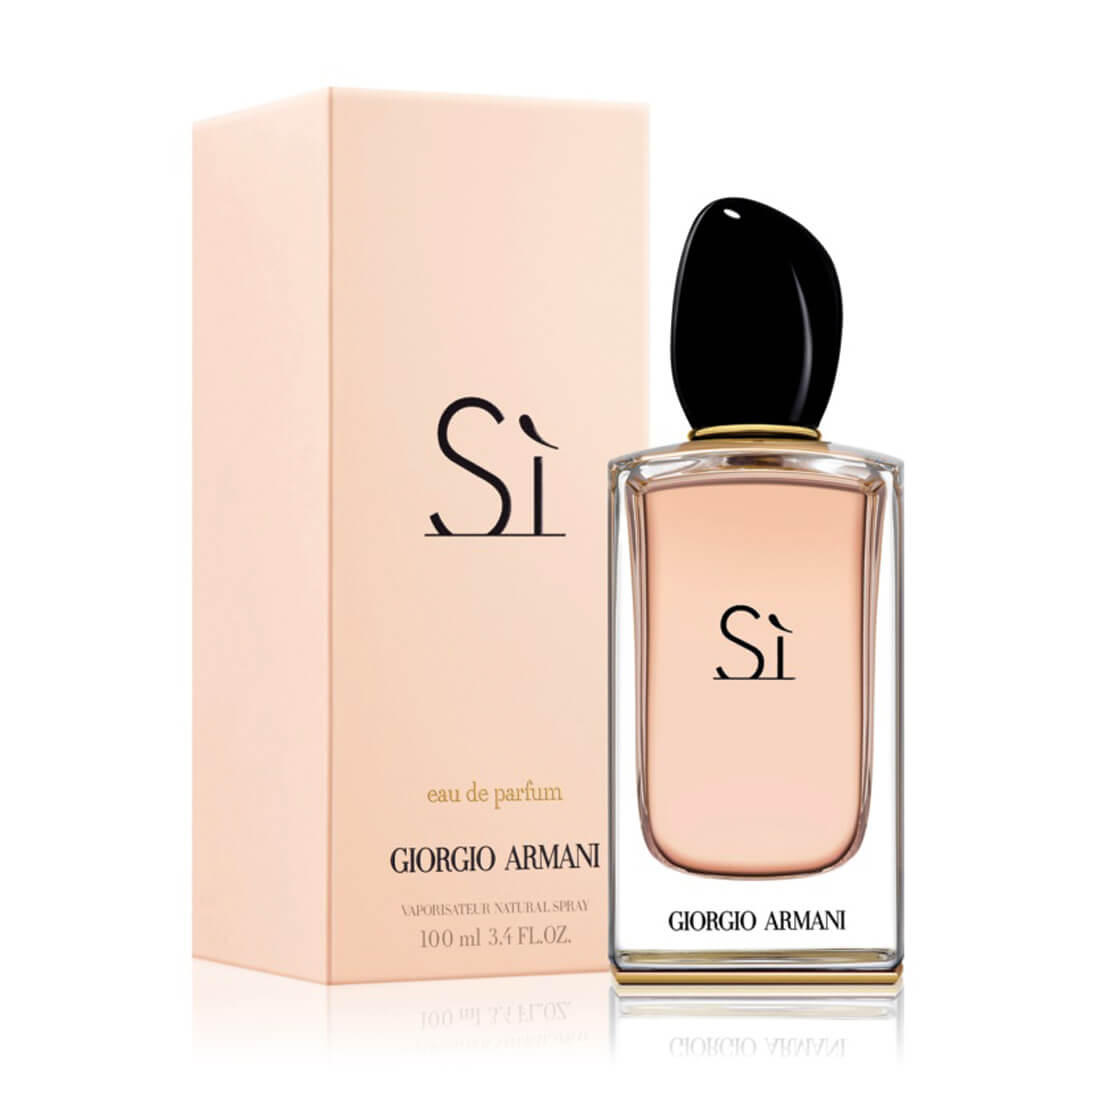 Giorgio Armani Si Eau De Parfum For Women